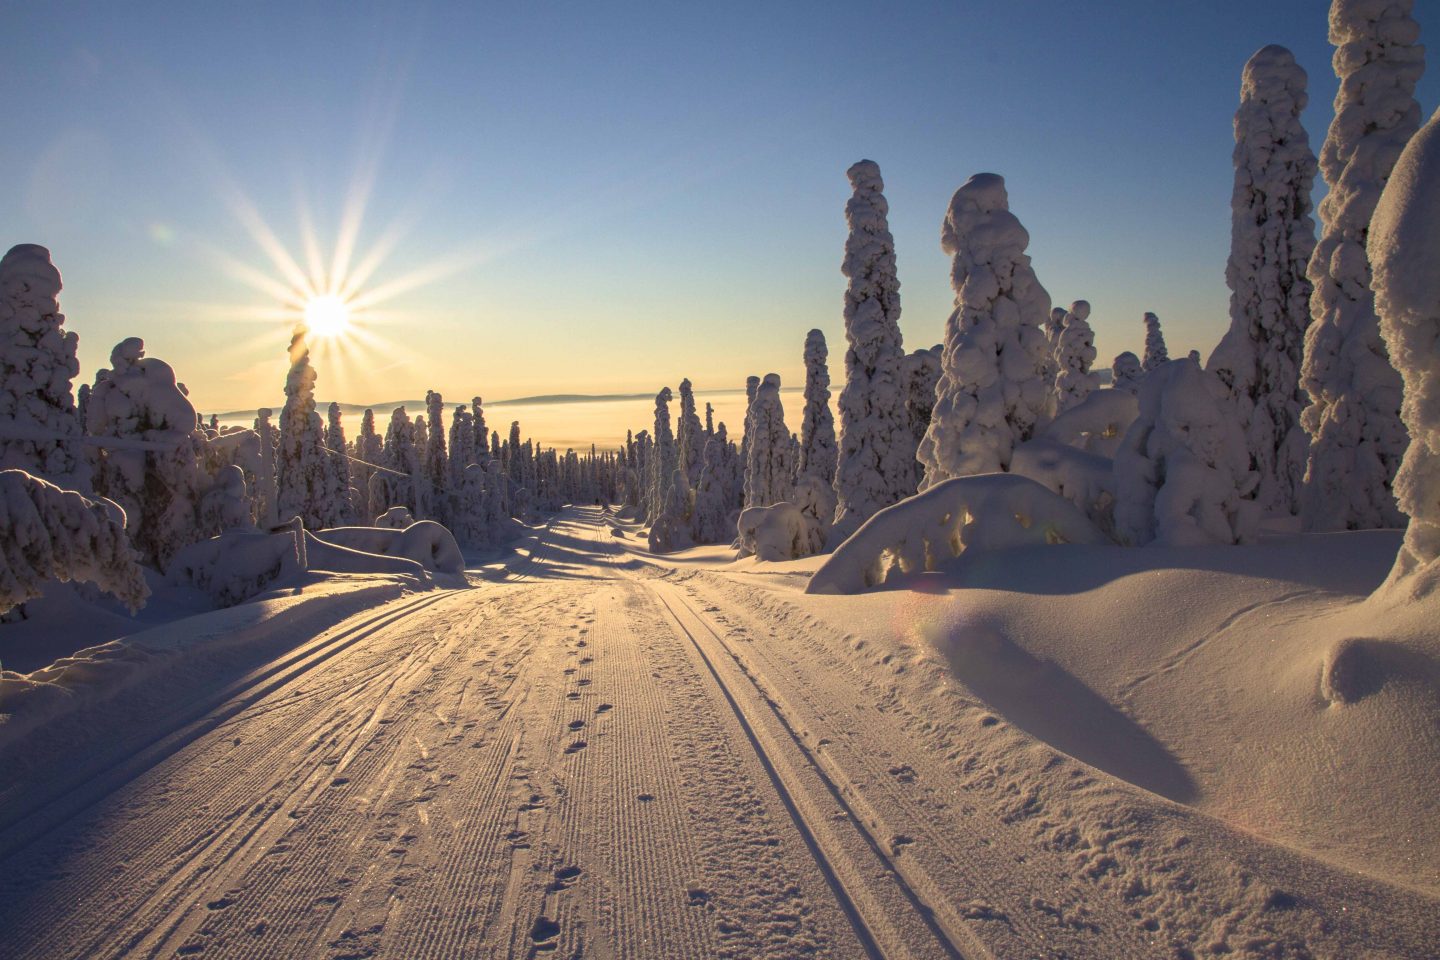 Maisemakuva, jossa hiihtolatu kulkee lumisessa metsässä. Puut ovat paksun tykkylumen peittämiä ja aurinko paistaa pilvettömältä taivaalta.